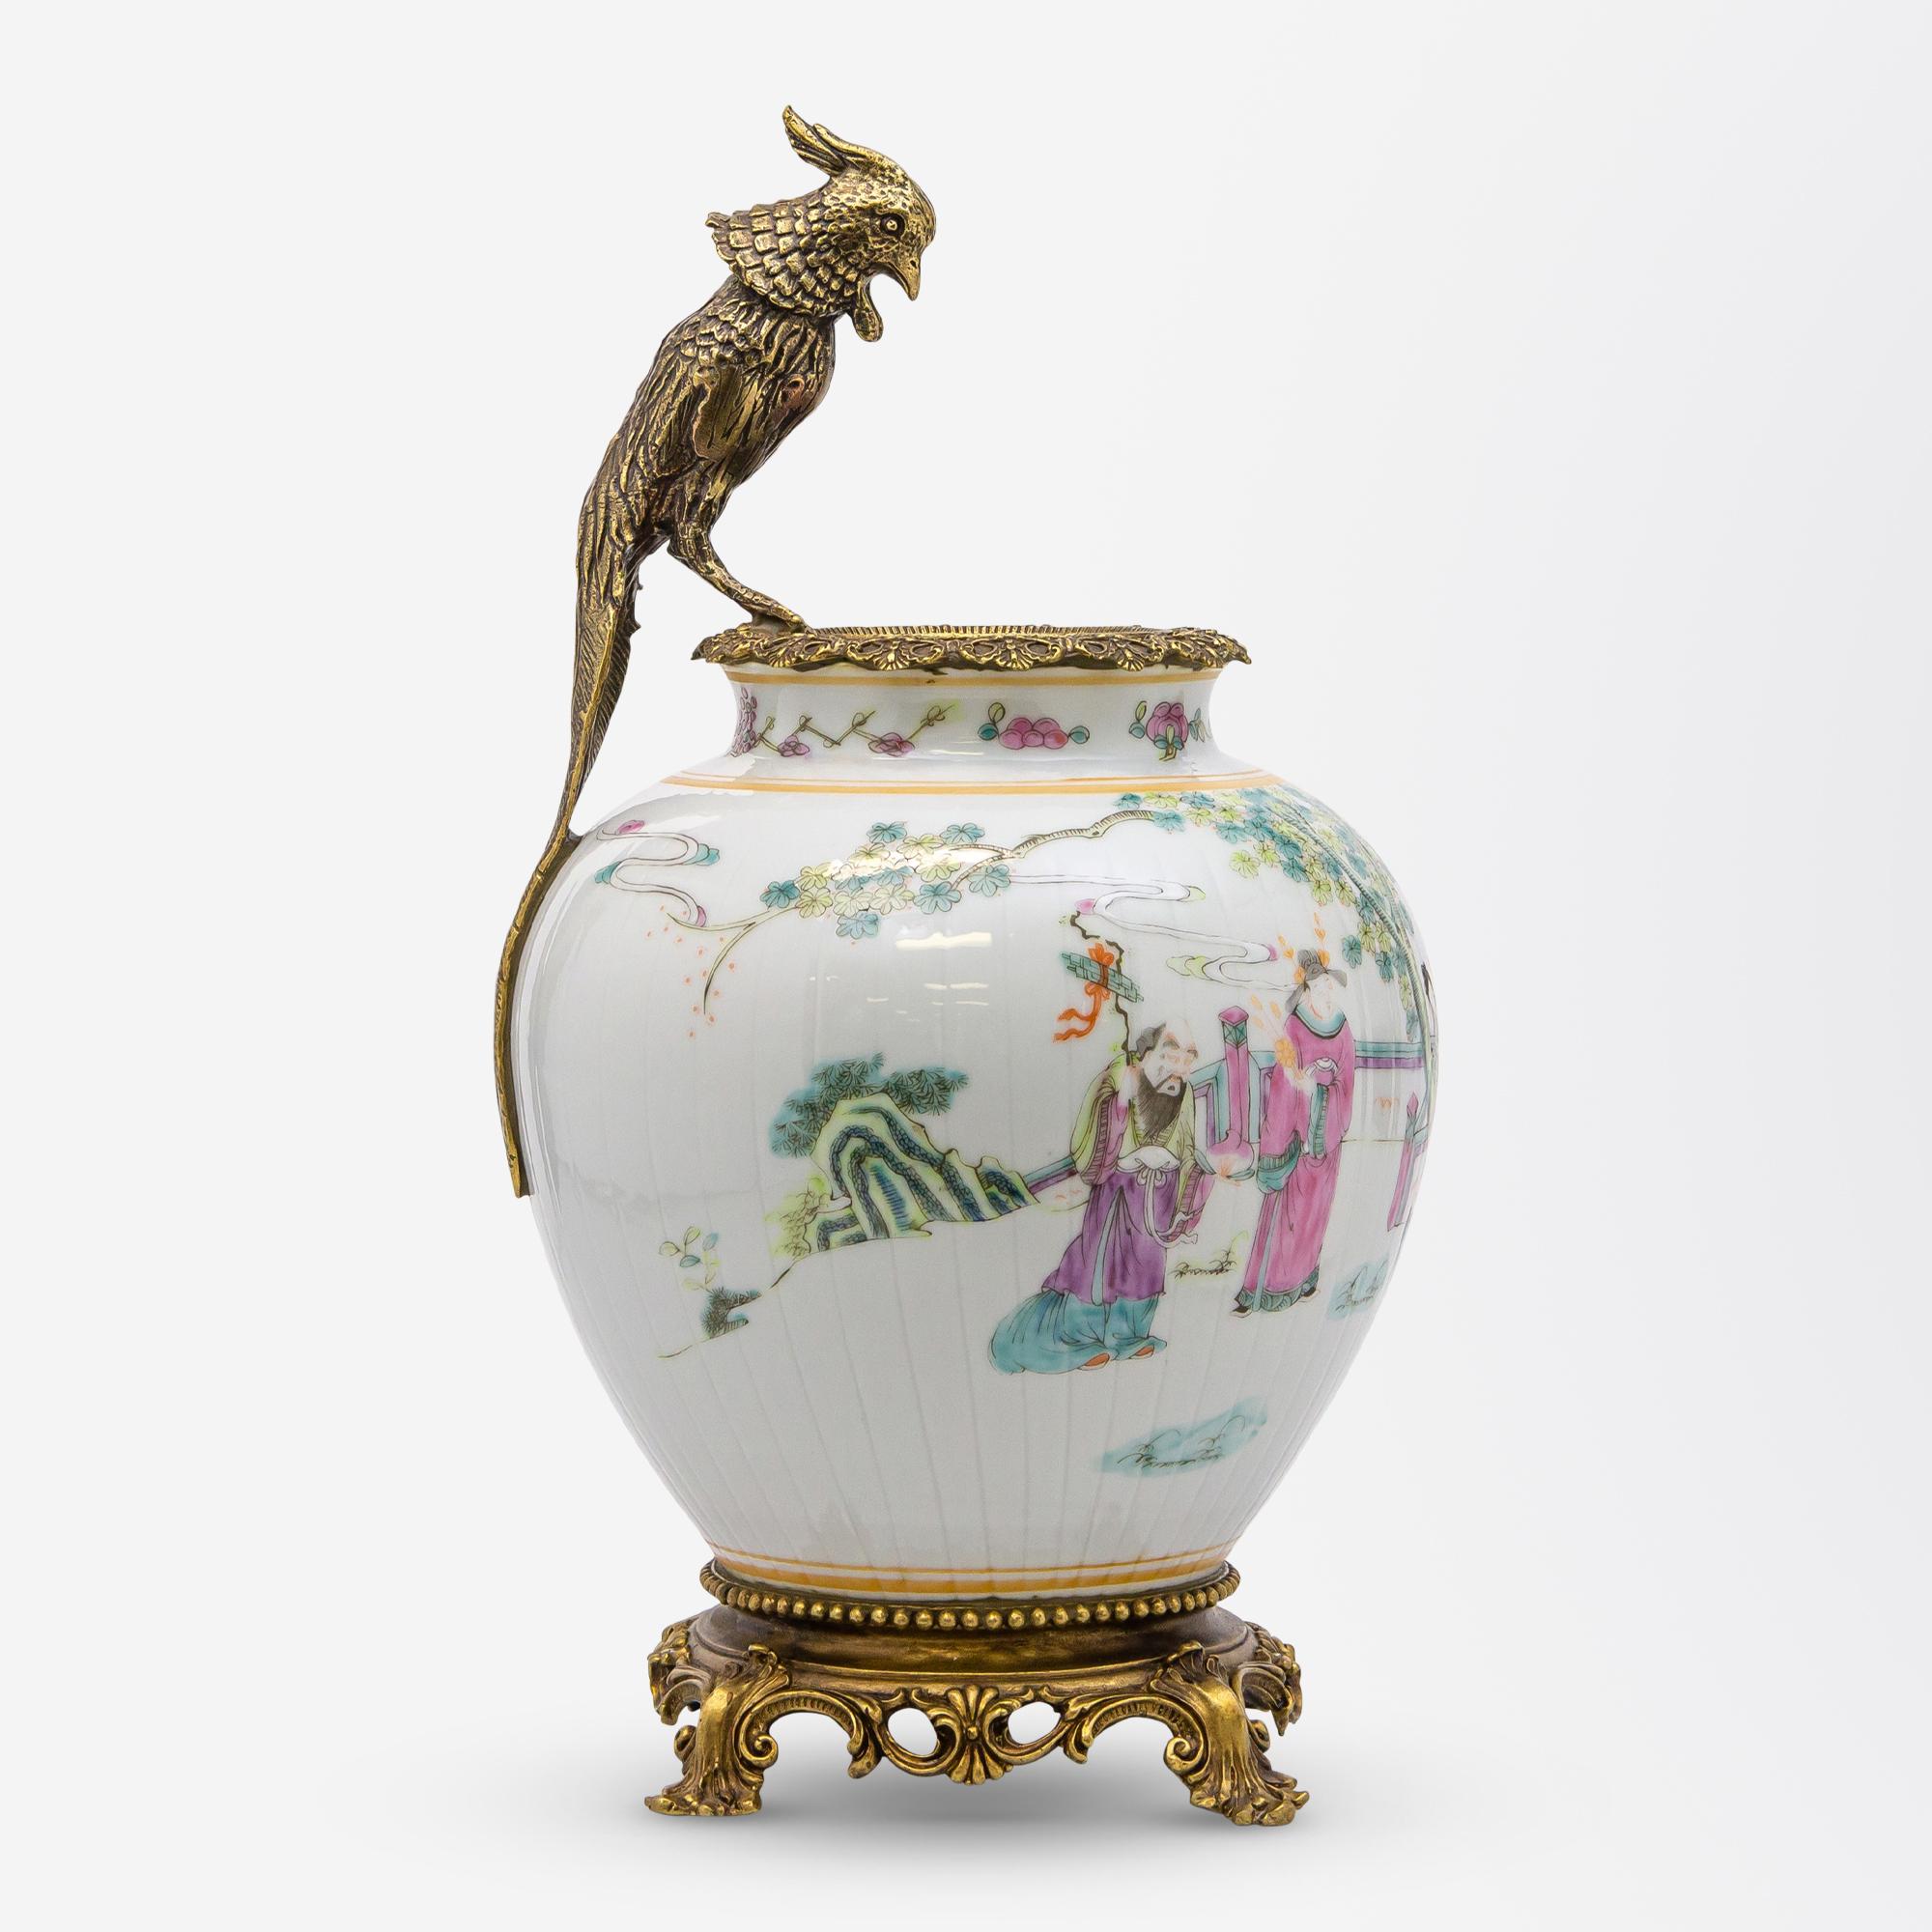 Cet exquis vase chinois polychrome a été monté avec des montures en bronze et a déjà fait partie de deux collections privées. Ce vase date du règne de l'empereur chinois Tongzhi (1856-1875), qui faisait partie de la longue dynastie des Qing et dont